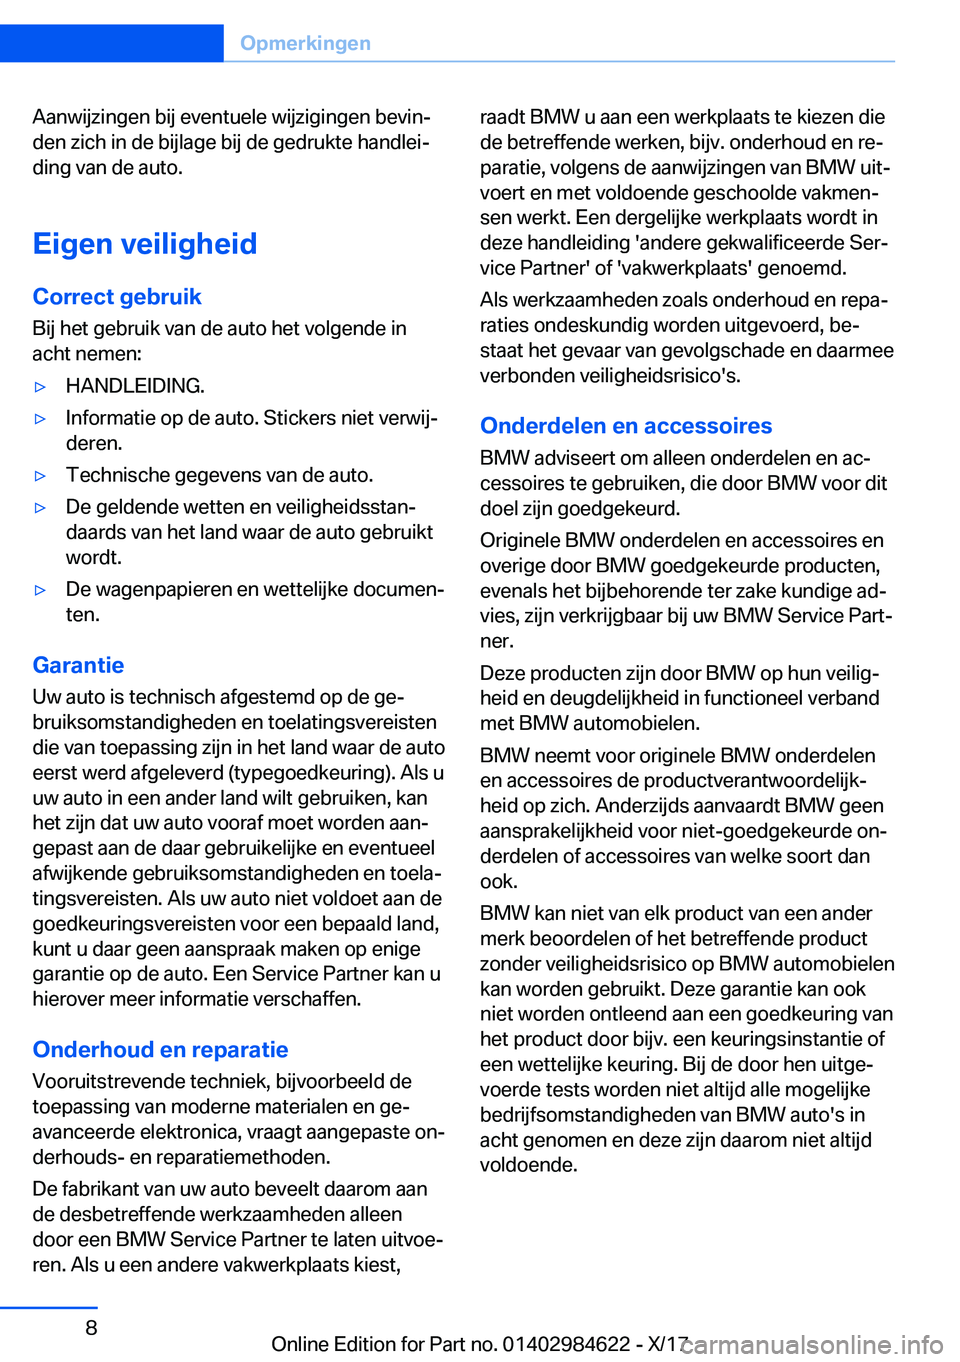 BMW 4 SERIES GRAN COUPE 2018  Instructieboekjes (in Dutch) �A�a�n�w�i�j�z�i�n�g�e�n� �b�i�j� �e�v�e�n�t�u�e�l�e� �w�i�j�z�i�g�i�n�g�e�n� �b�e�v�i�nj
�d�e�n� �z�i�c�h� �i�n� �d�e� �b�i�j�l�a�g�e� �b�i�j� �d�e� �g�e�d�r�u�k�t�e� �h�a�n�d�l�e�ij
�d�i�n�g� �v�a